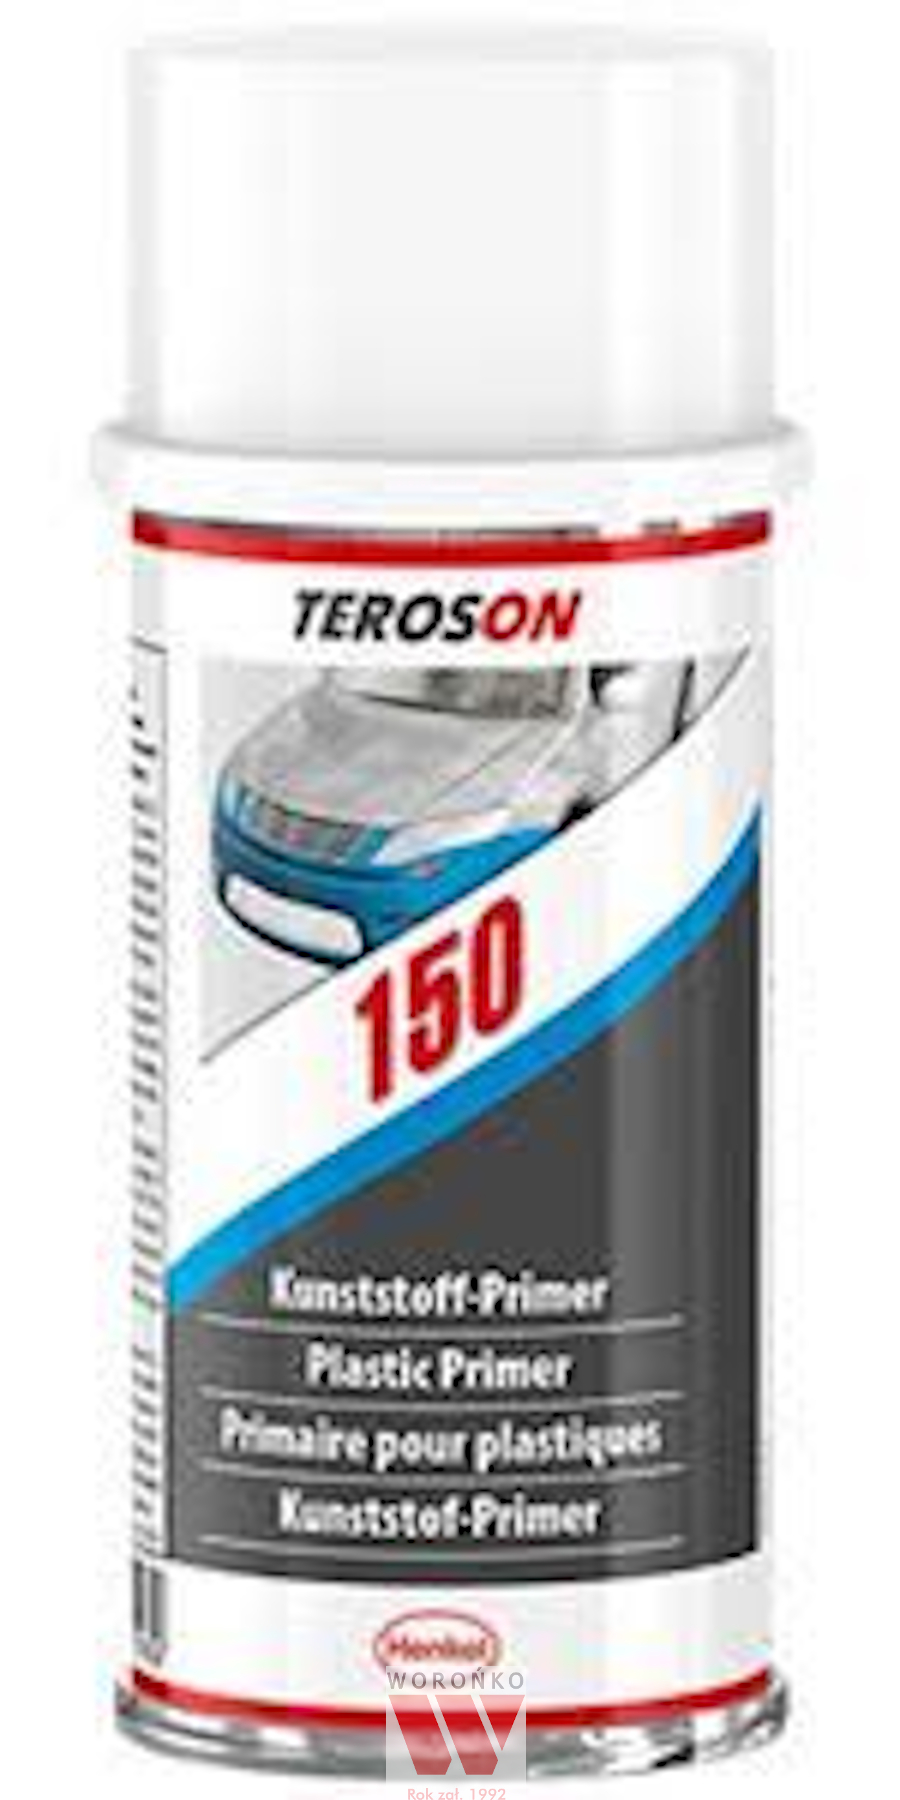 TEROSON 150 - 150ml (plastic primer) / Terokal 150